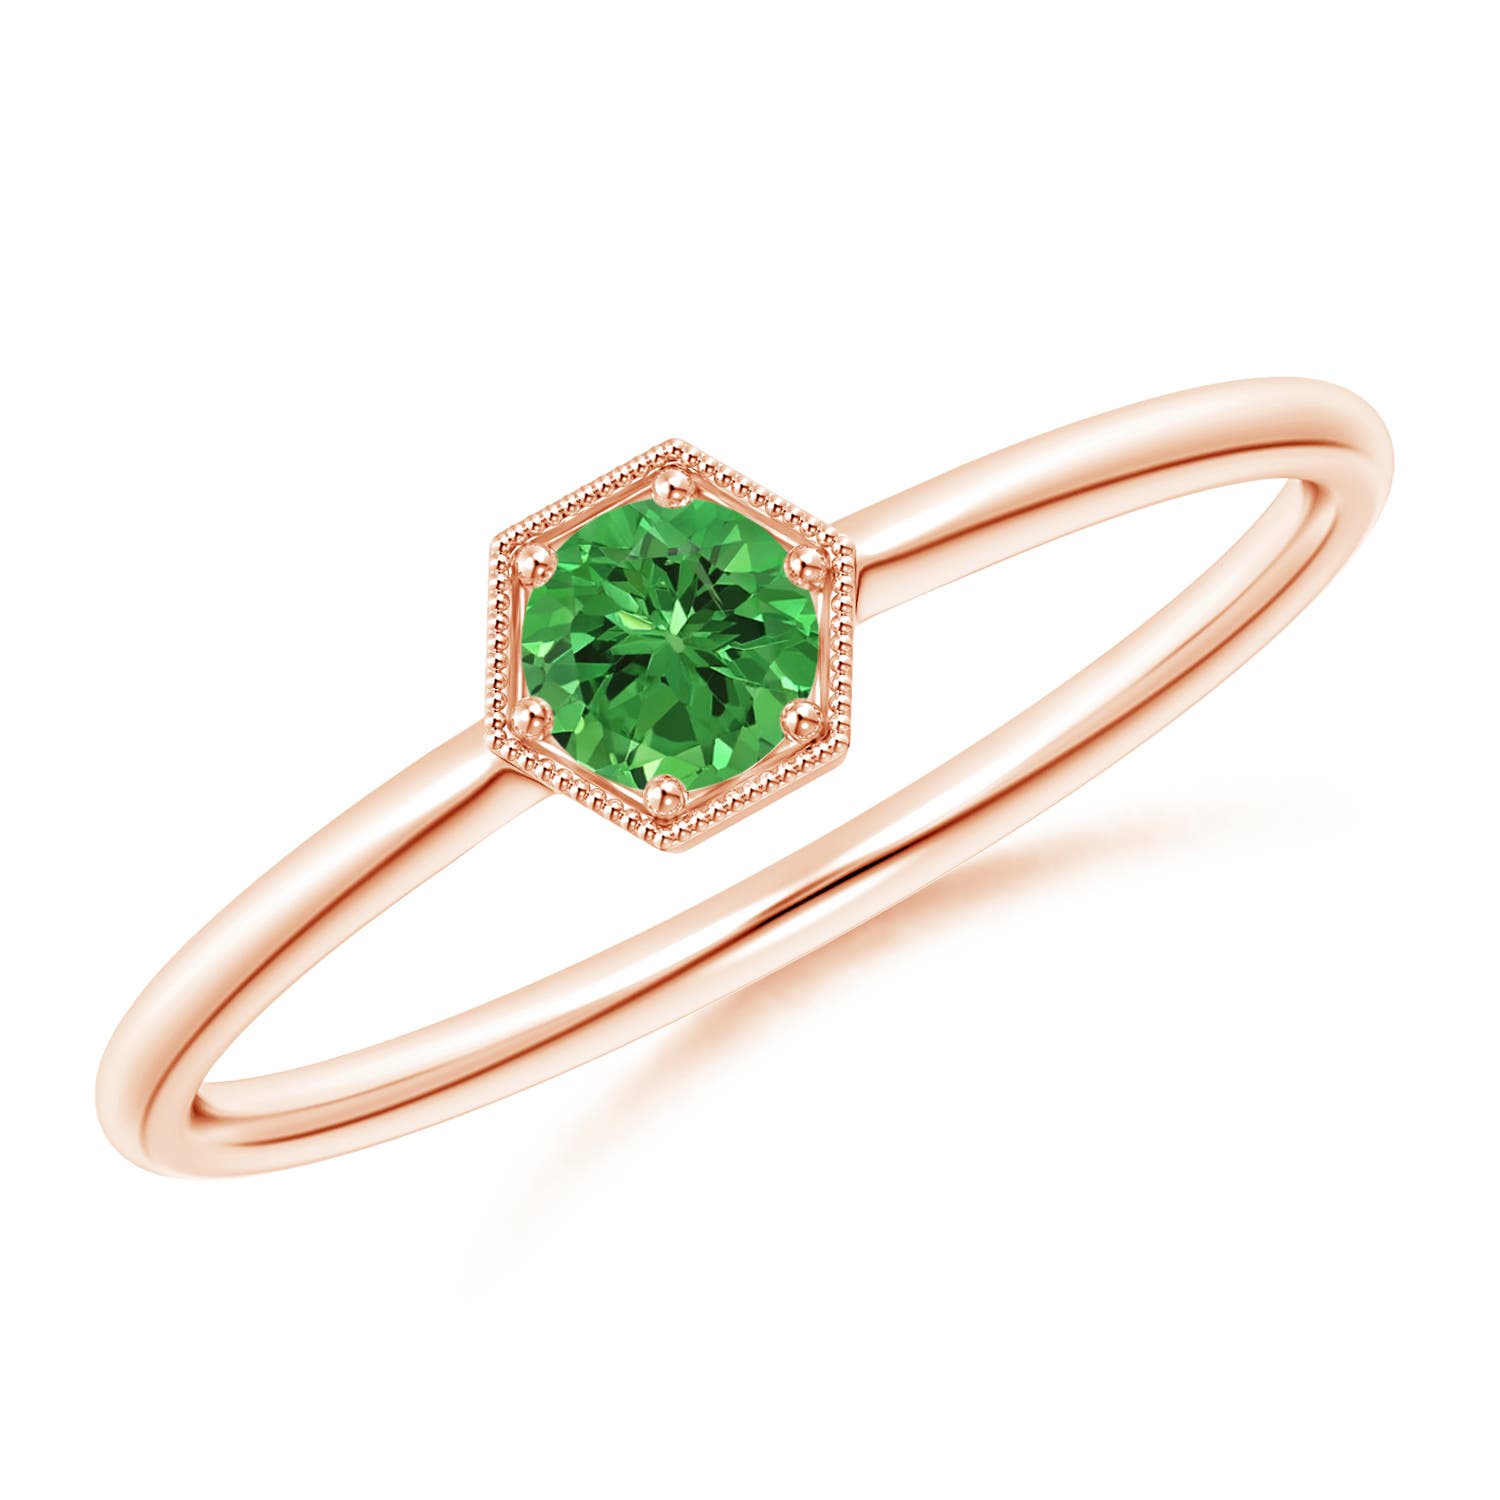 Tsavorite Garnet Ring - Vibrant Vivid Green Garnet Ring Gem